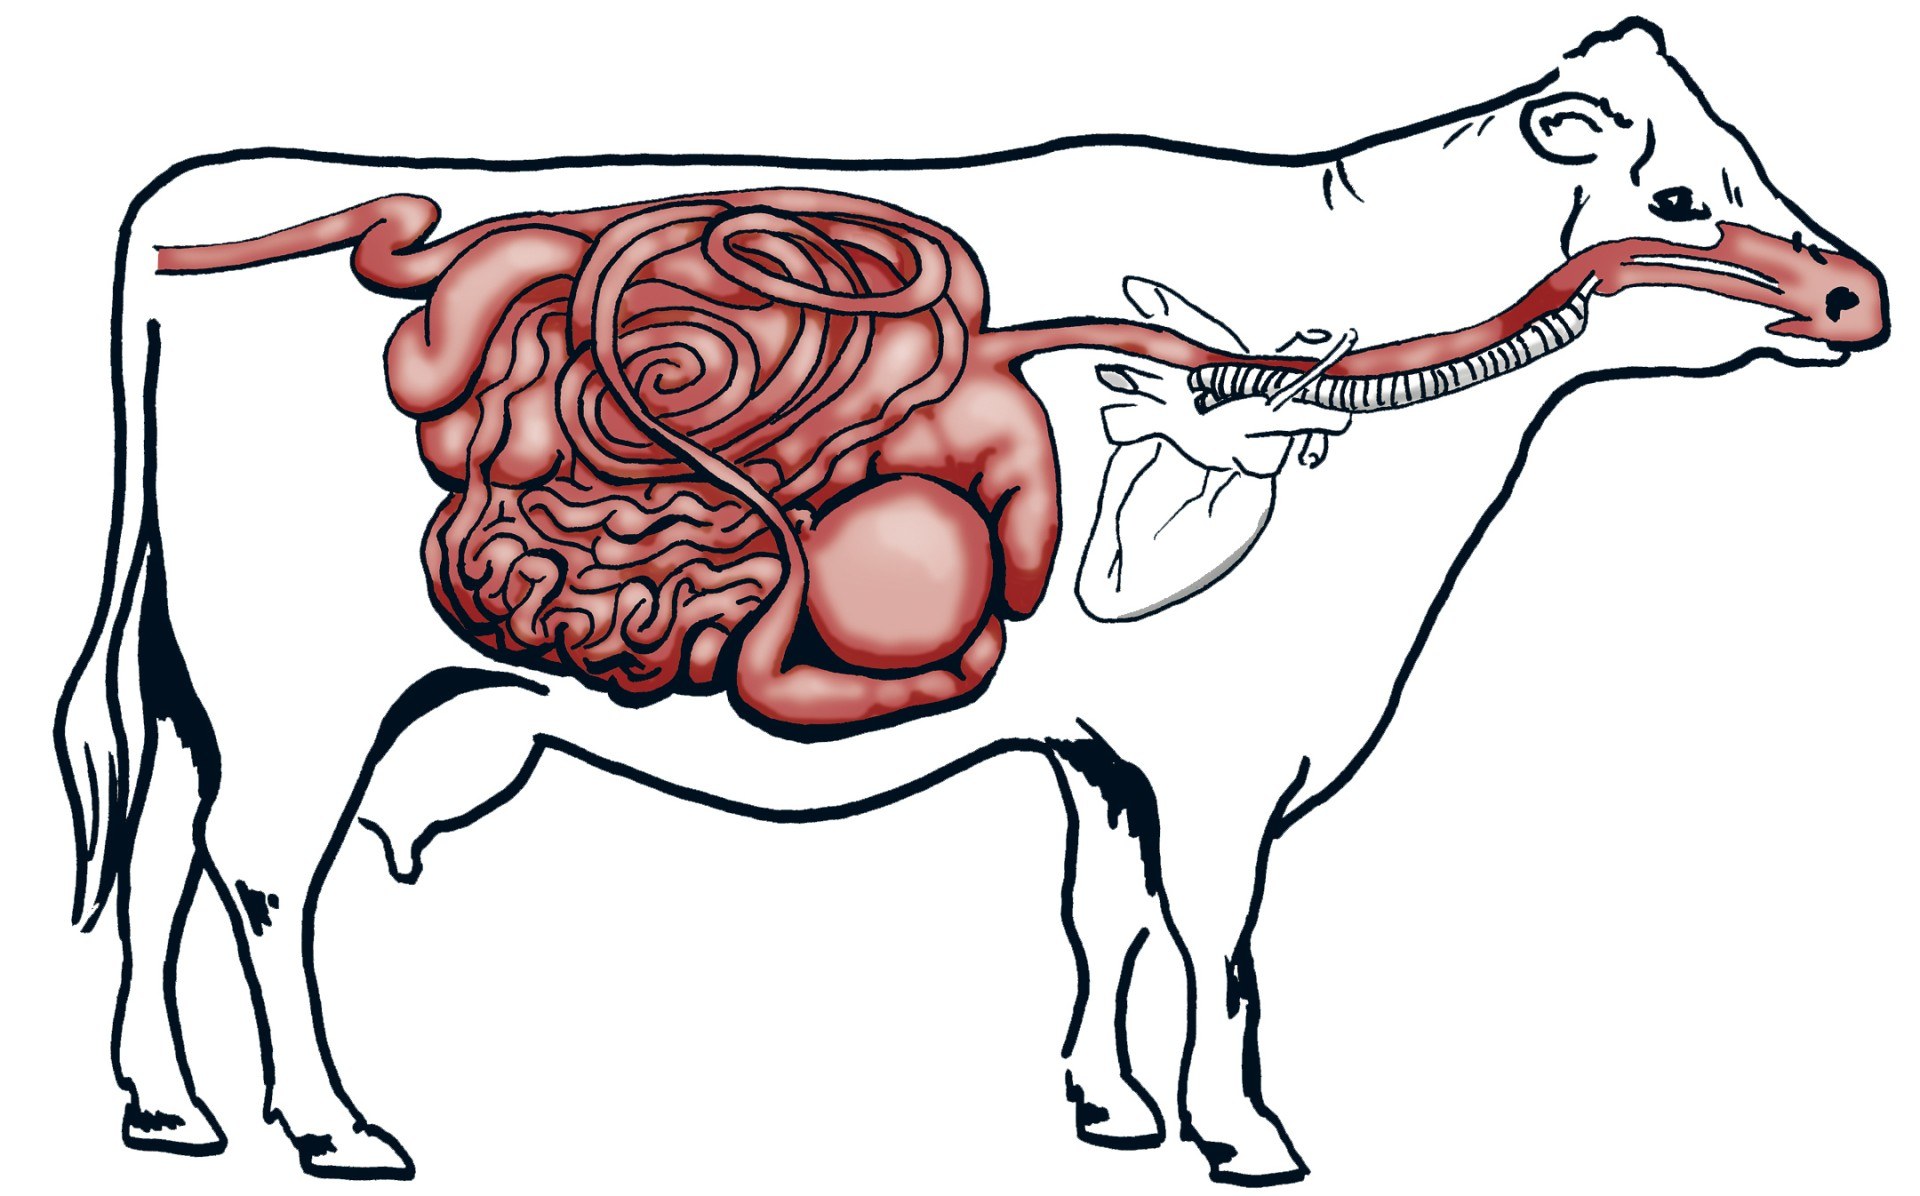 Преджелудки жвачных. Пищеварительный тракт коровы. Анатомия преджелудков коровы. Пищеварительная система жвачных. Желудочно-кишечный тракт крупного рогатого скота.